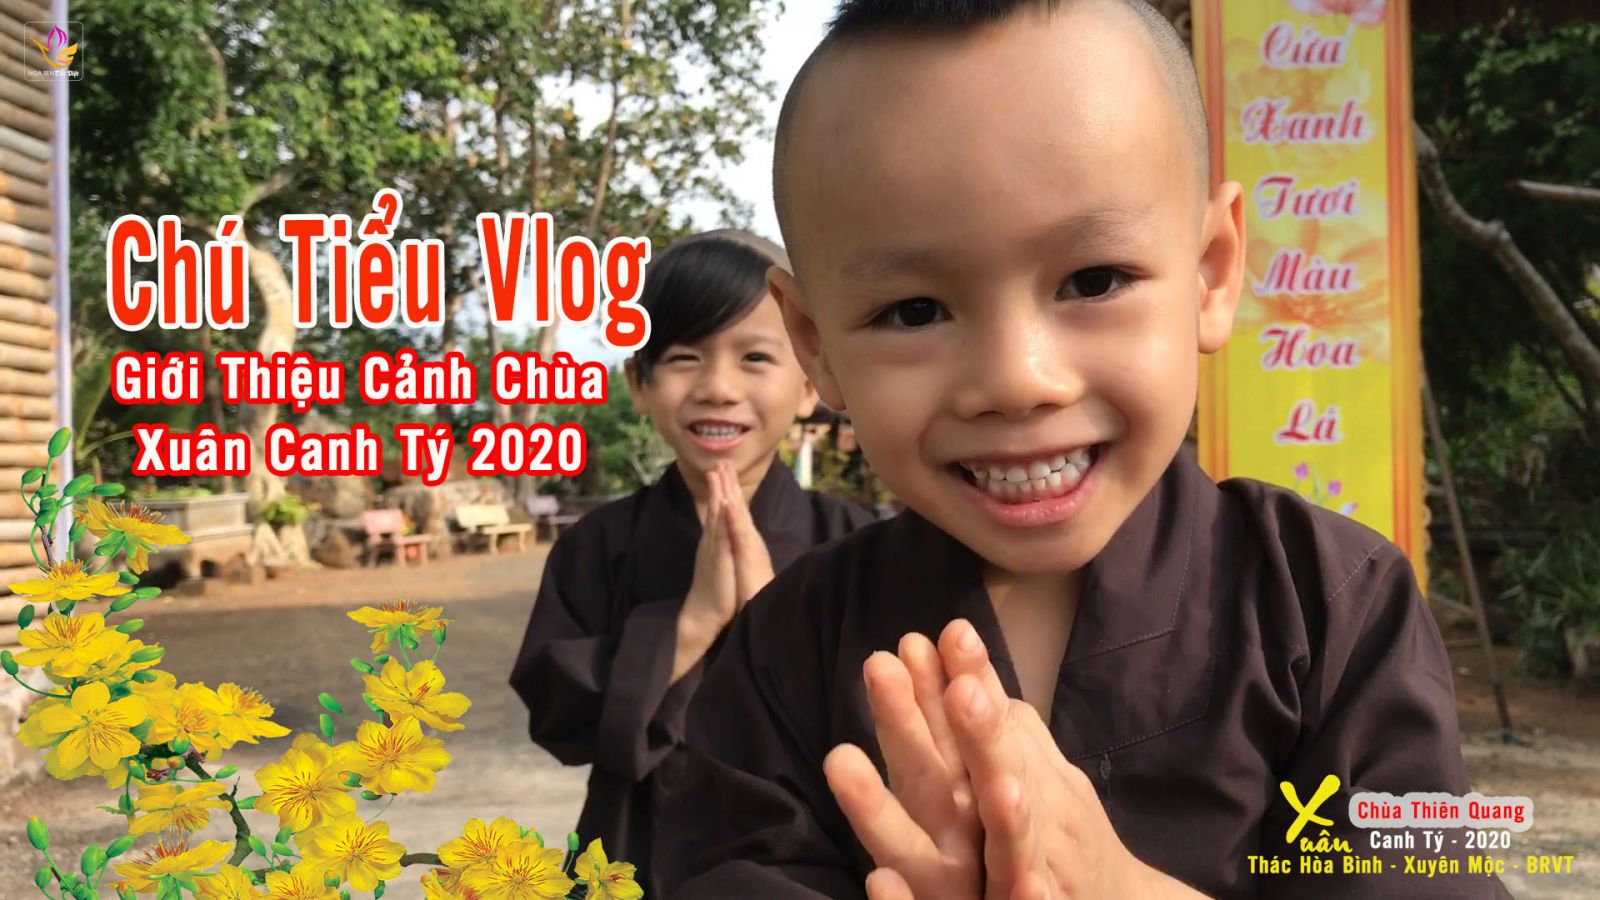 Chùa Thiên Quang BRVT rực rỡ hoa xuân Cửa Thiền năm Canh Tý 2020  